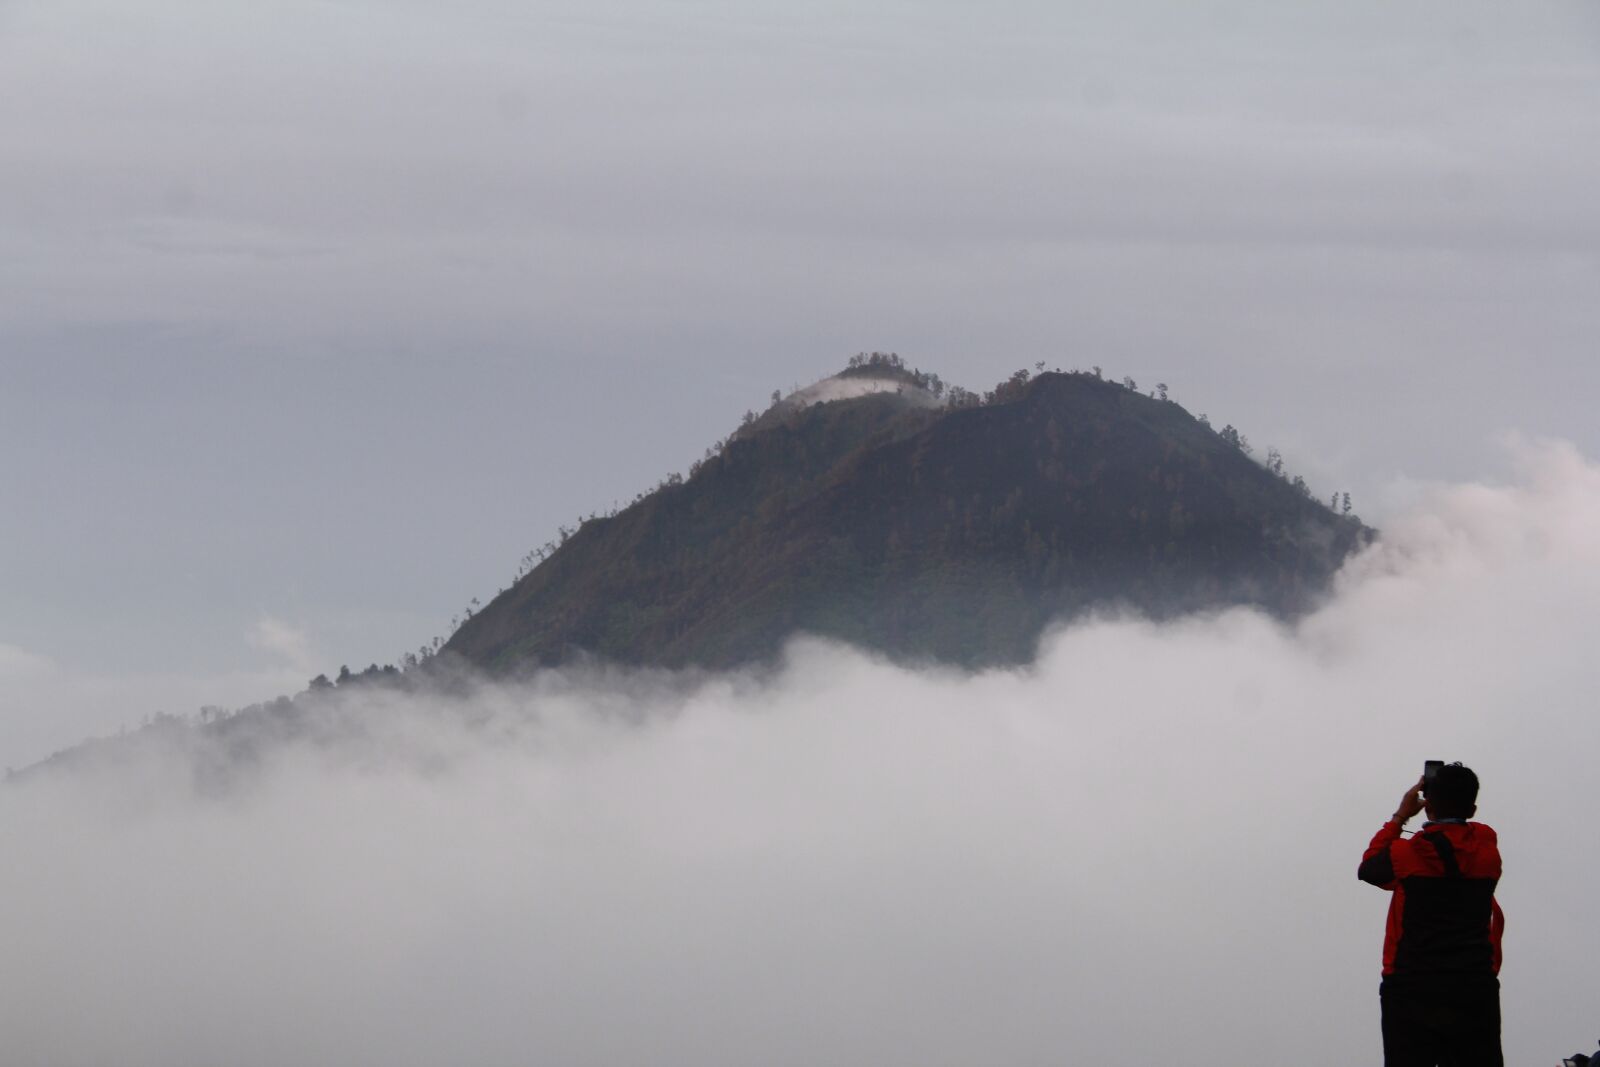 Canon EOS 60D sample photo. Mountain, morning, landscape photography